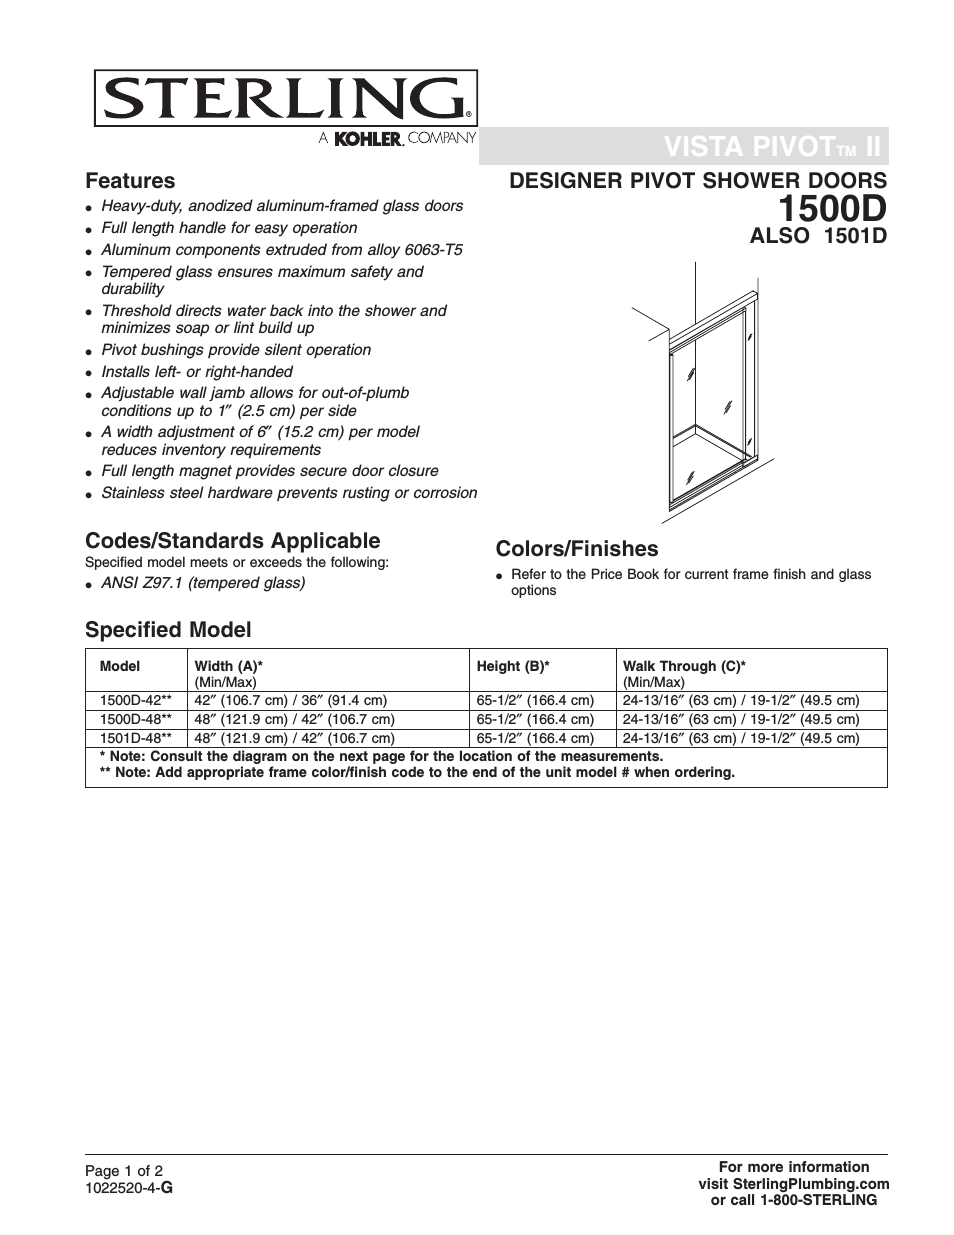 Designer Pivot Shower Doors 1500D